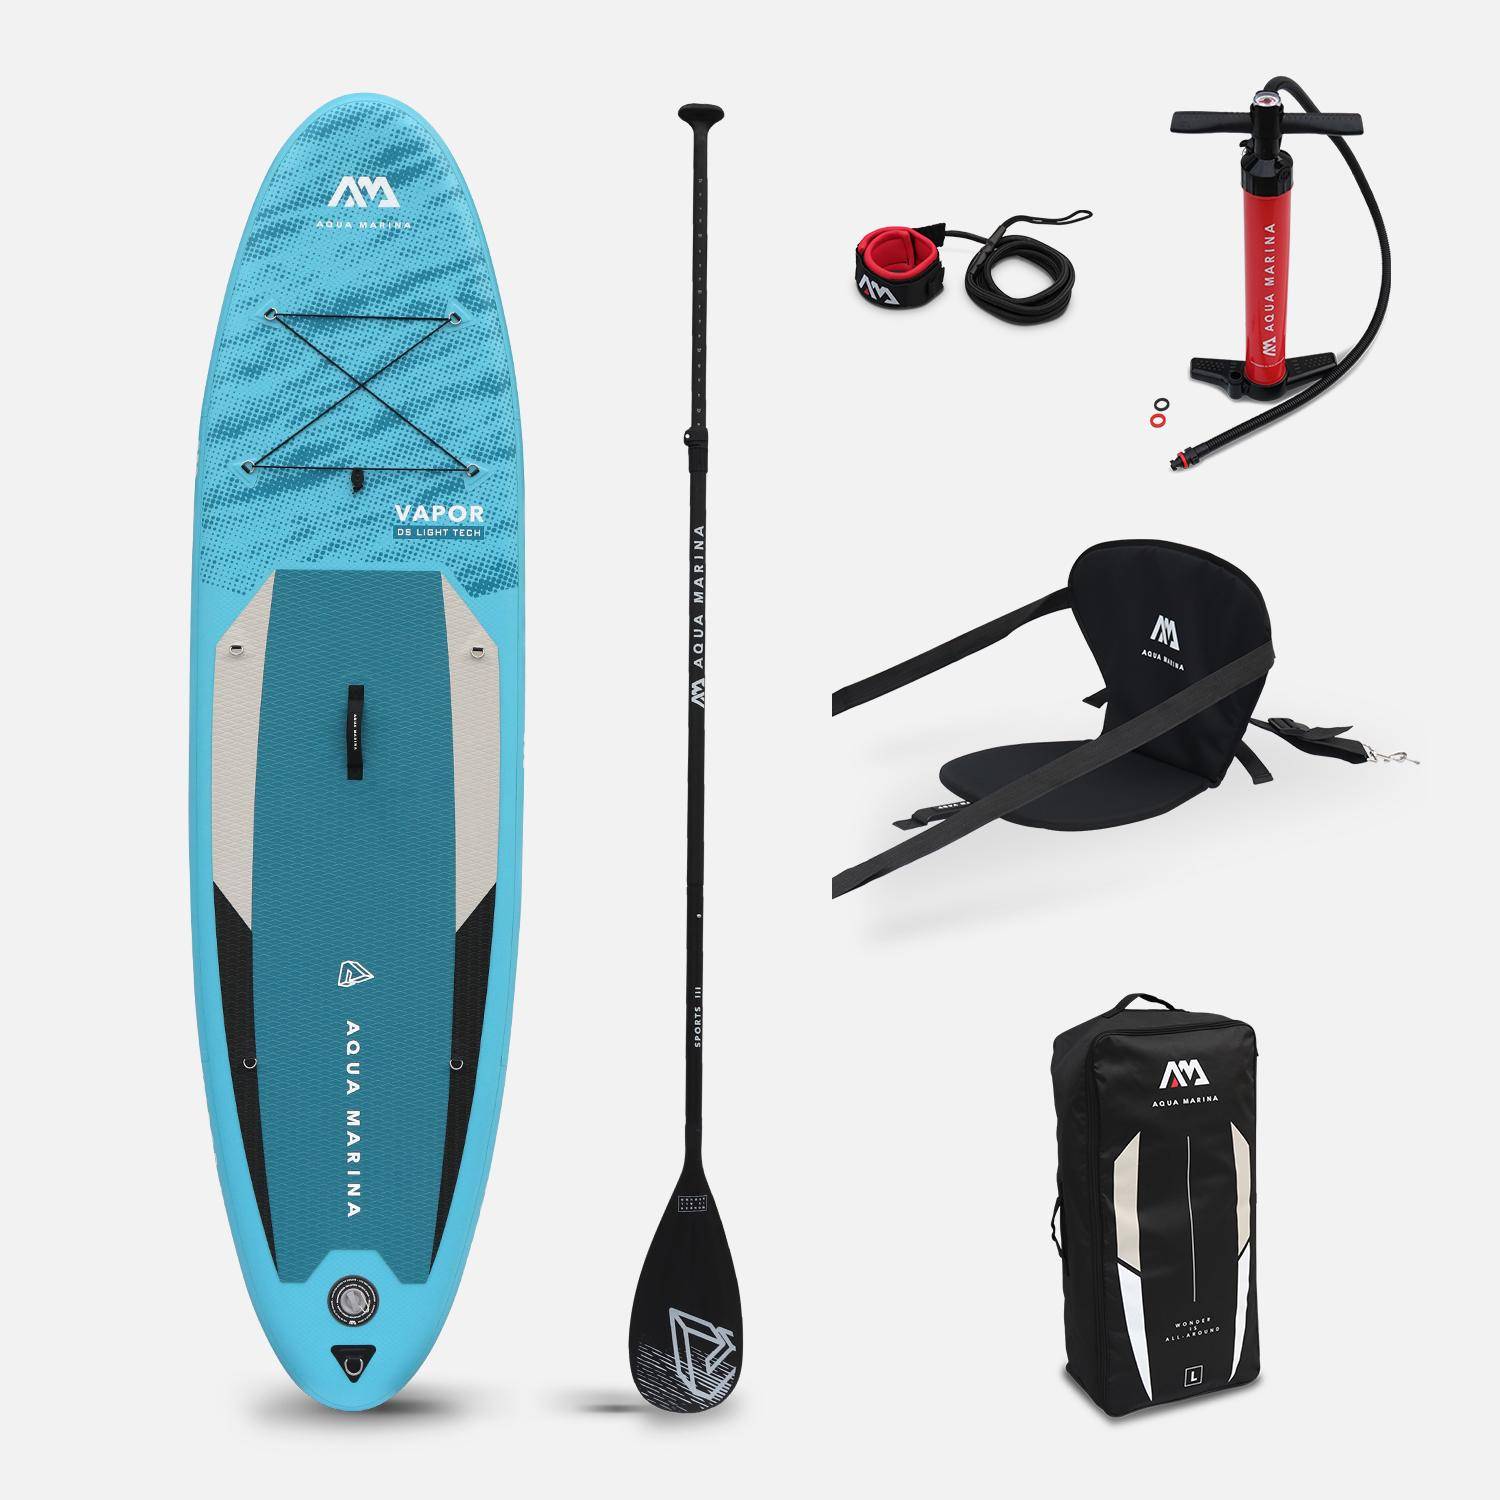 Pack stand up paddle gonflable Vapor 10'4" avec pompe haute pression double action, pagaie, leash et sac de rangement + Siège de kayak Photo1